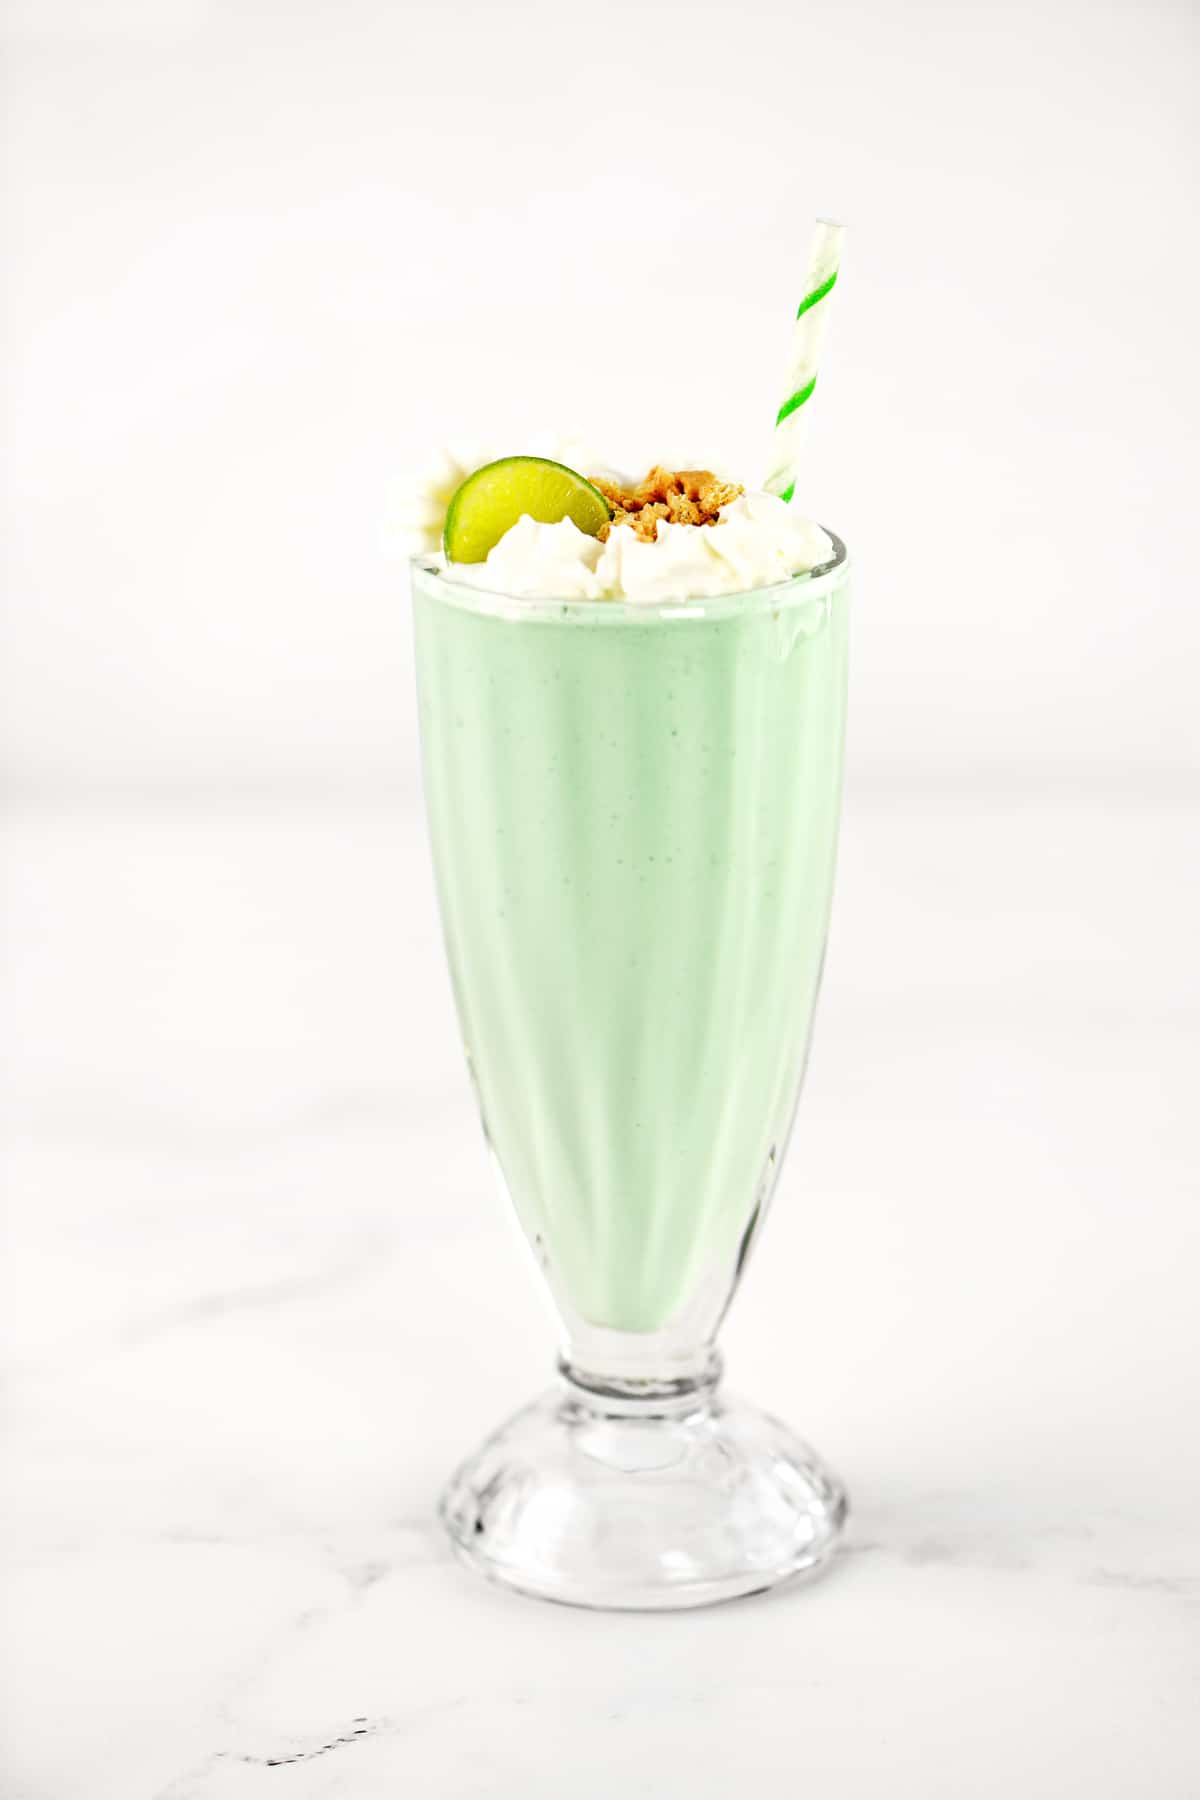 A key lime milkshake in a glass.